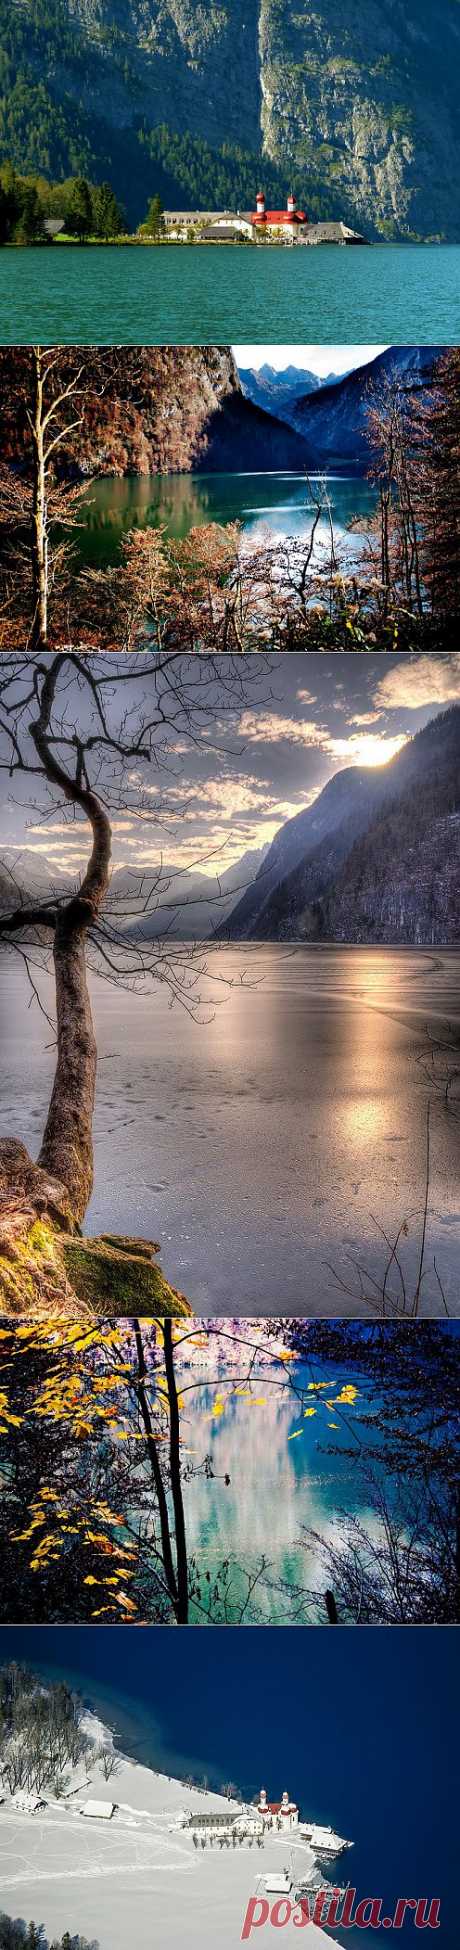 Озеро Кёнигзее (“Королевское озеро”), одна из самых красивых природных достопримечательностей Германии. Большая часть озера лежит на территории Национального парка Берхтесгаден. Изумрудный водоем с кристально-чистой водой уютно расположился в окружении могущественных гор и великолепных альпийских пейзажей. Кёнигзее образовалось во время последнего ледникового периода вследствие таяния ледников. Оно простирается с севера на юг на 7,2 км.